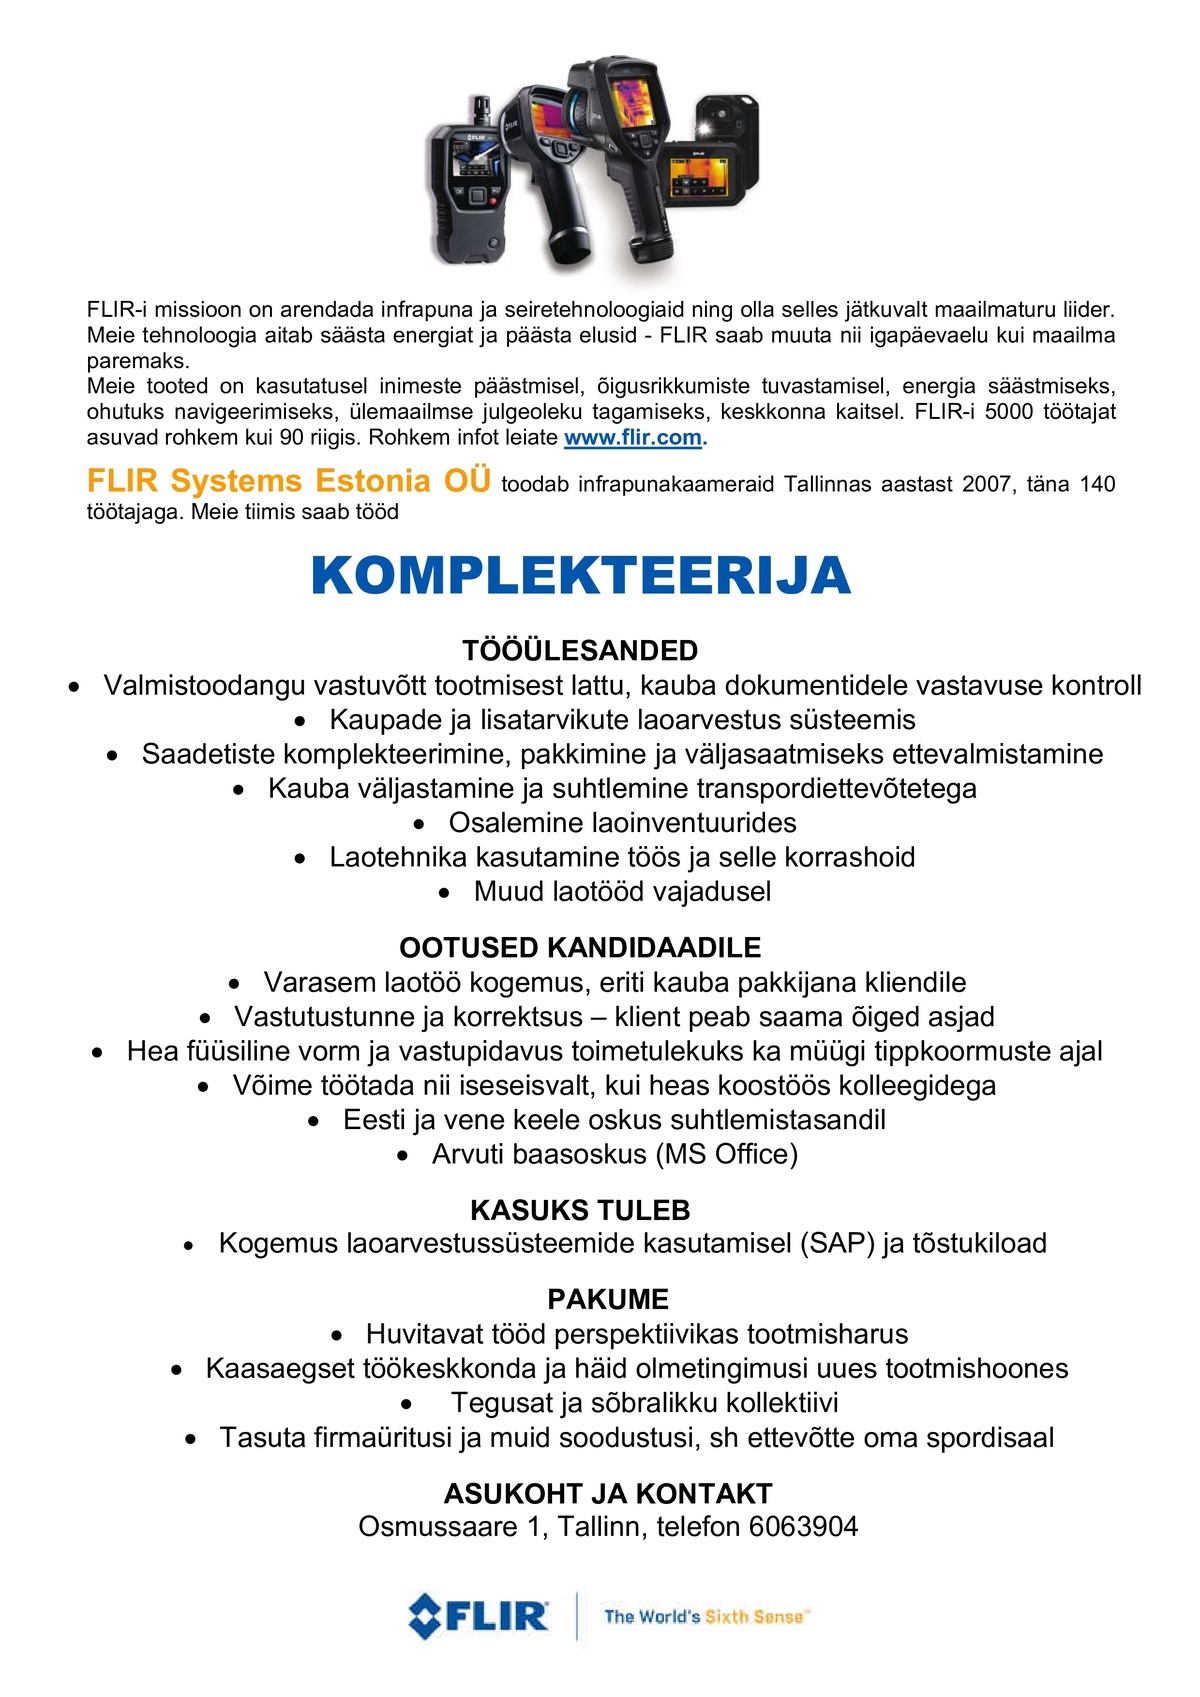 FLIR Systems Estonia OÜ Komplekteerija